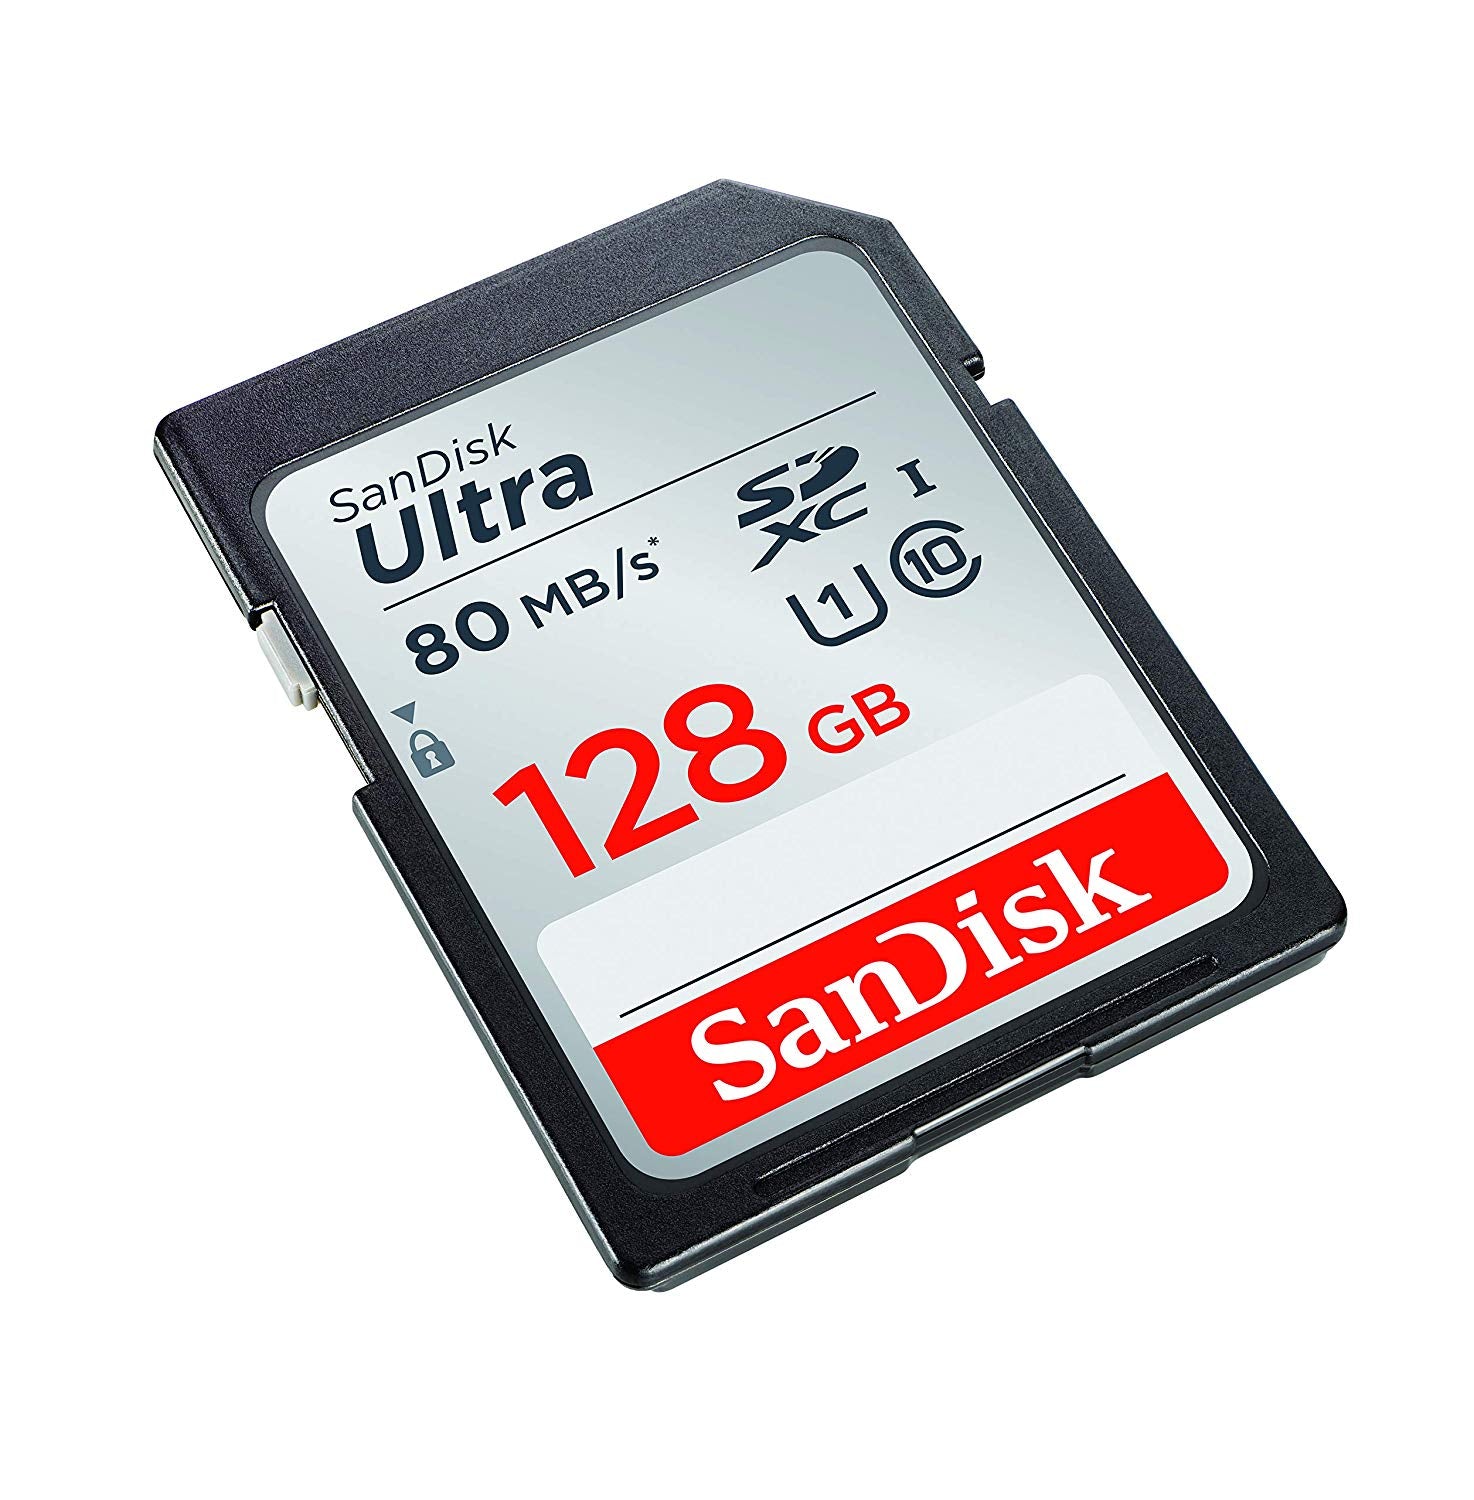 Carte mémoire SD haute vitesse Microdrive de classe 10 de 128 Go pour tous  les appareils numériques avec fente pour carte SD